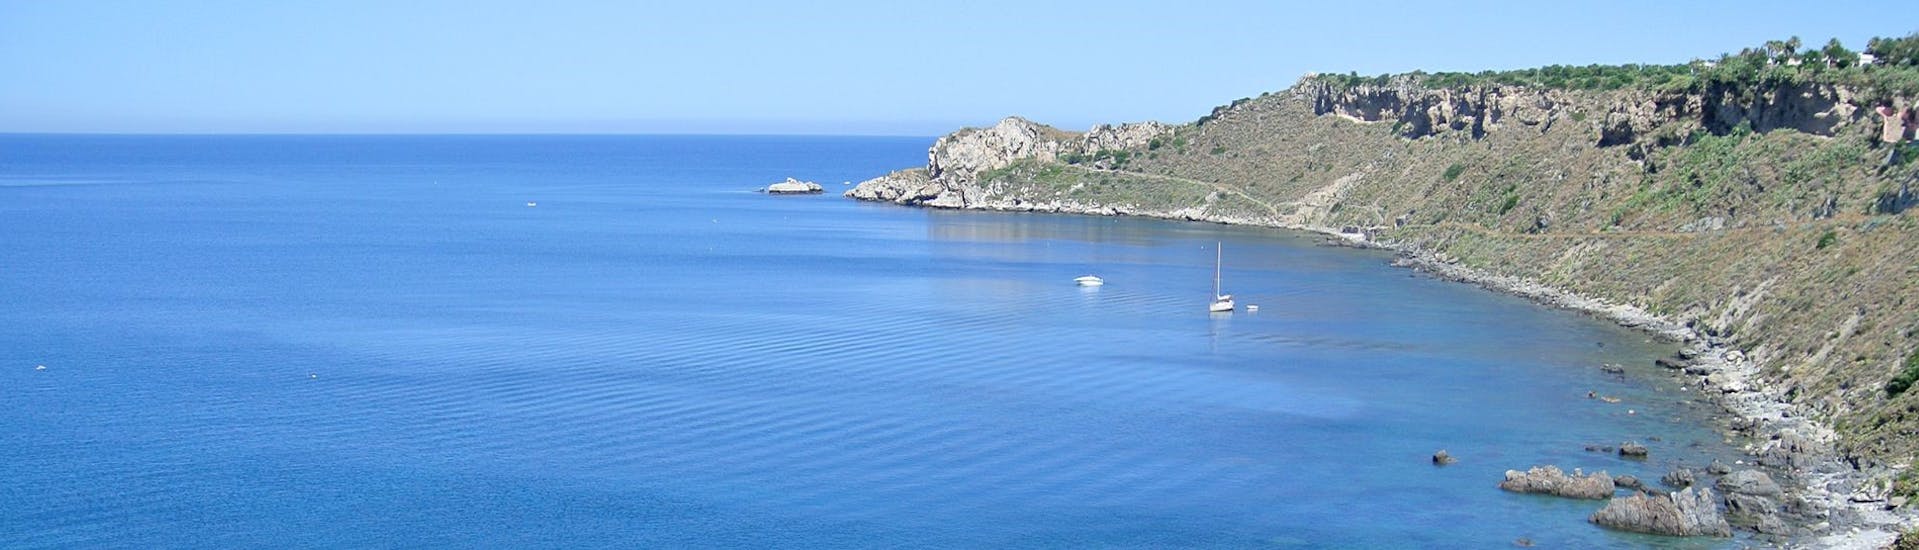 Vista dalla barca di Sky Sea Charter durante la gita in barca privata da Milazzo verso Panarea e Stromboli.